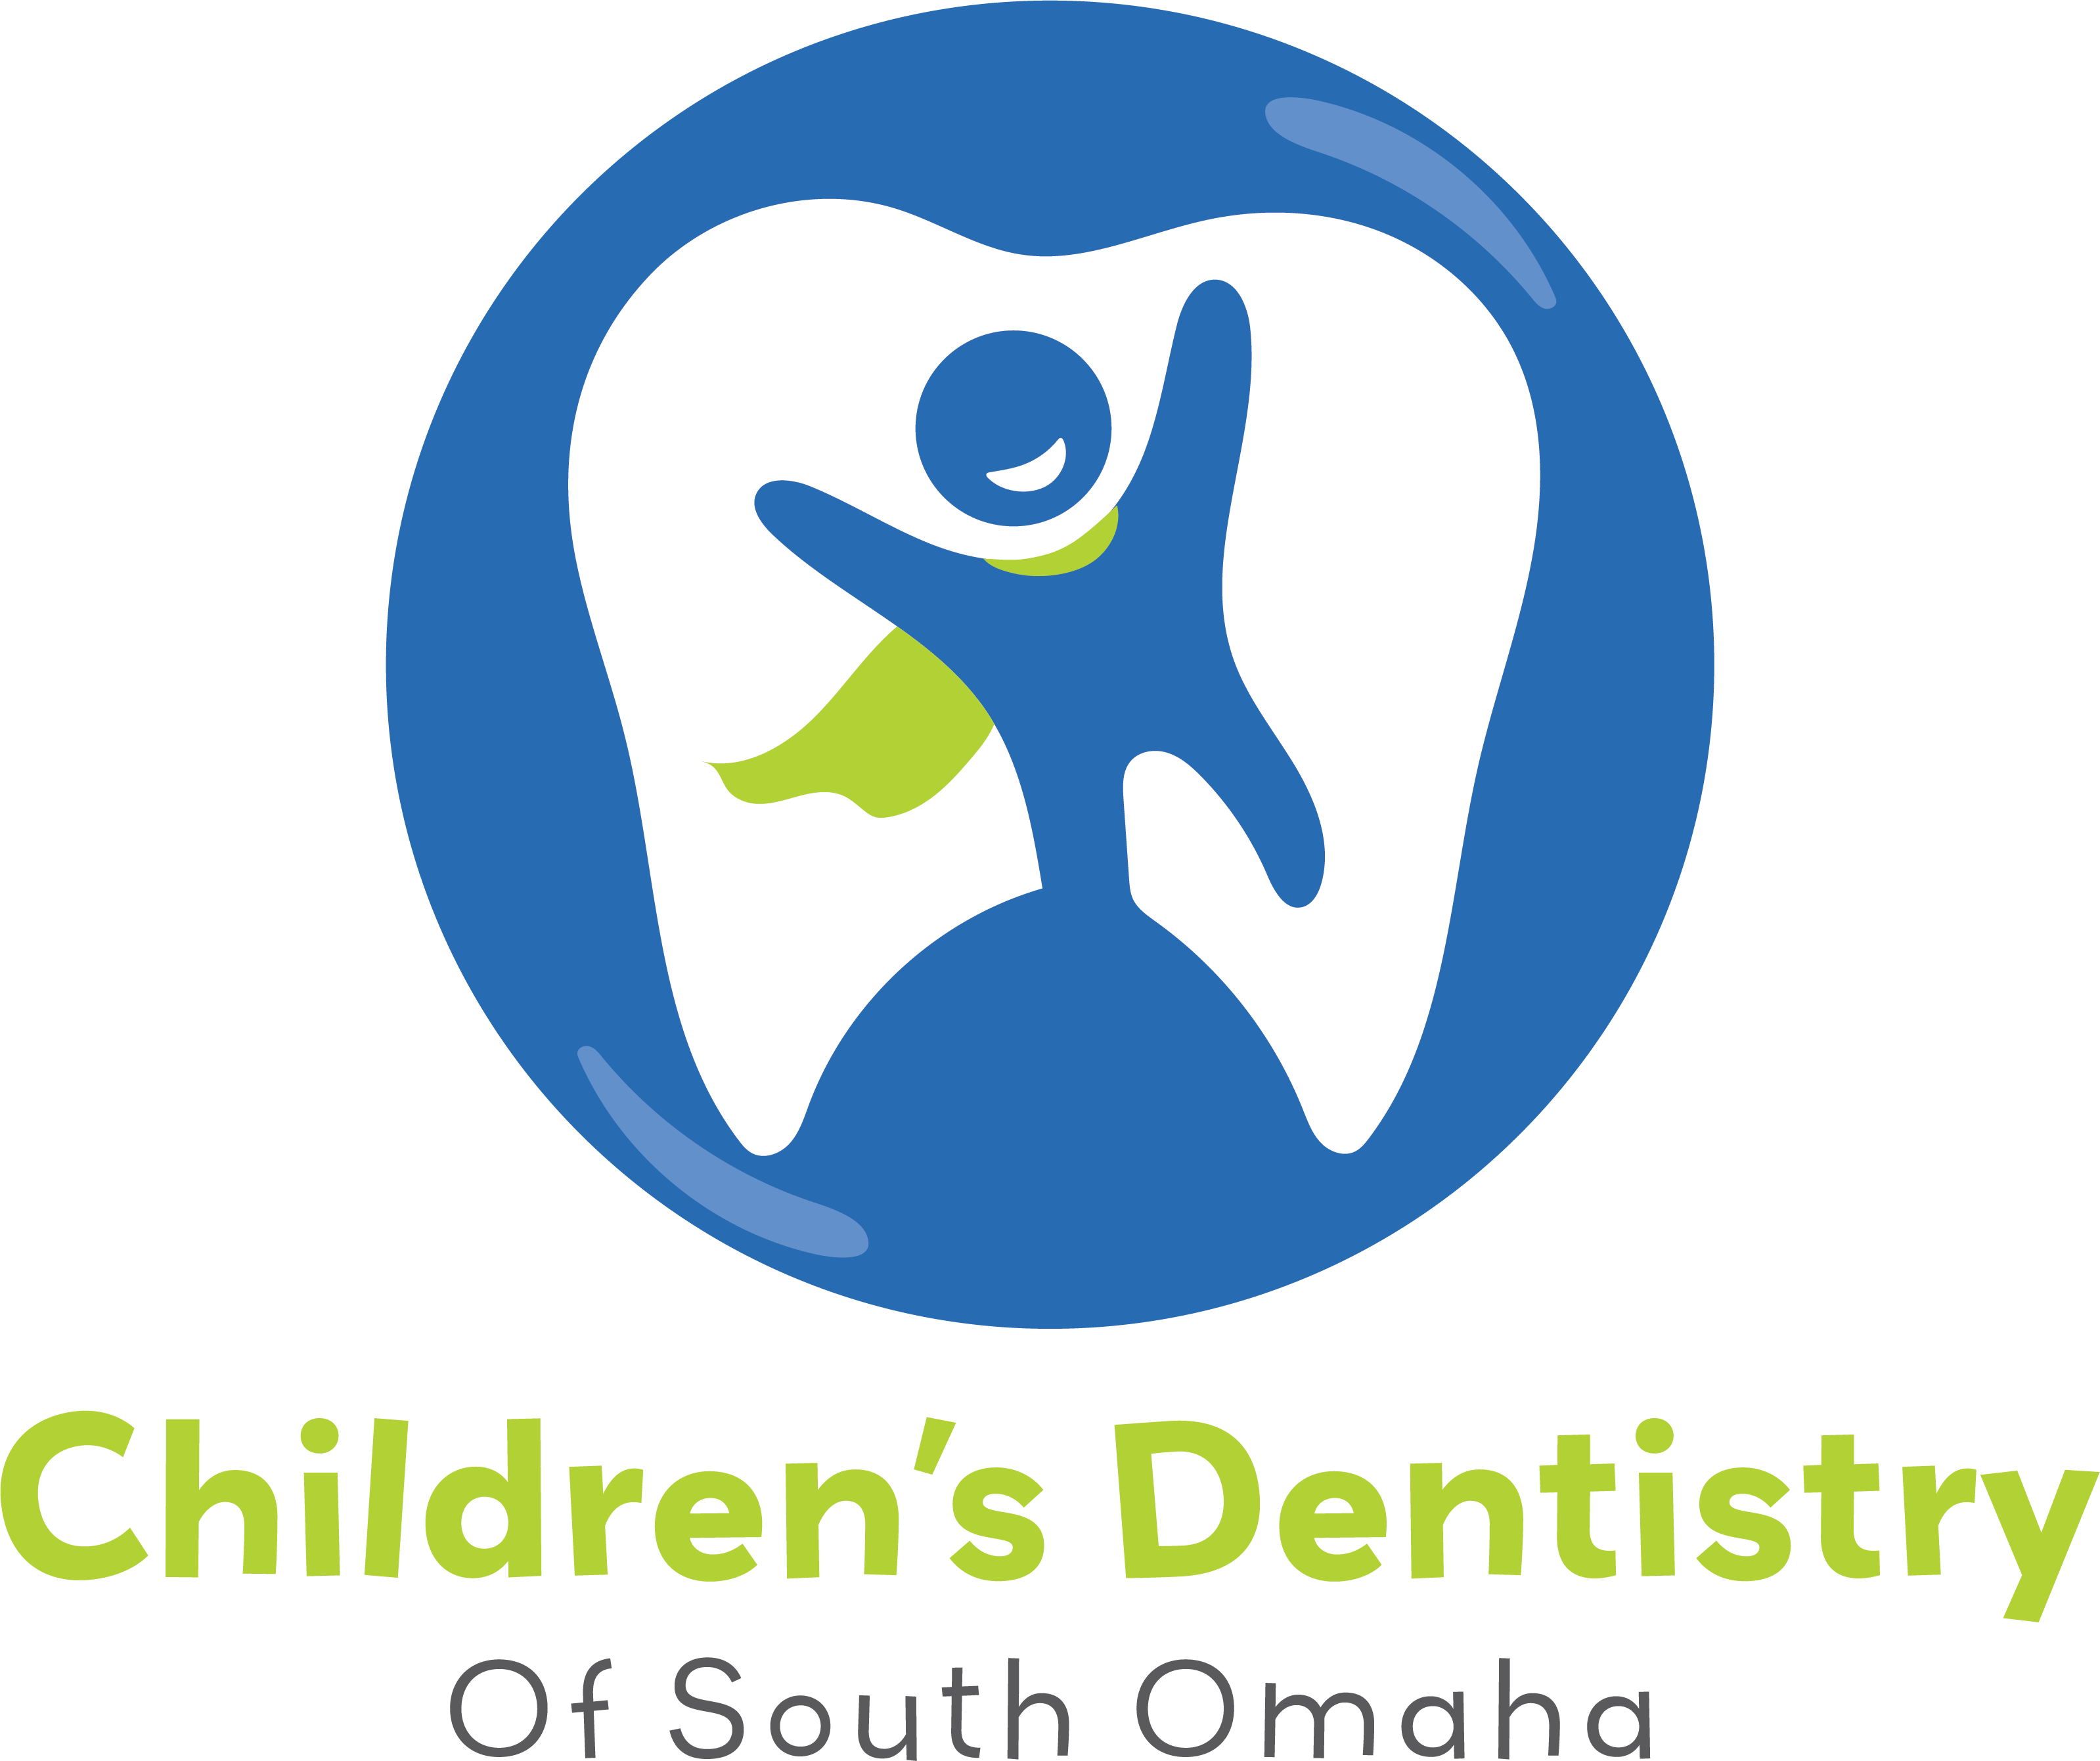 Lone Peak Dental Group - Logo Rebrands